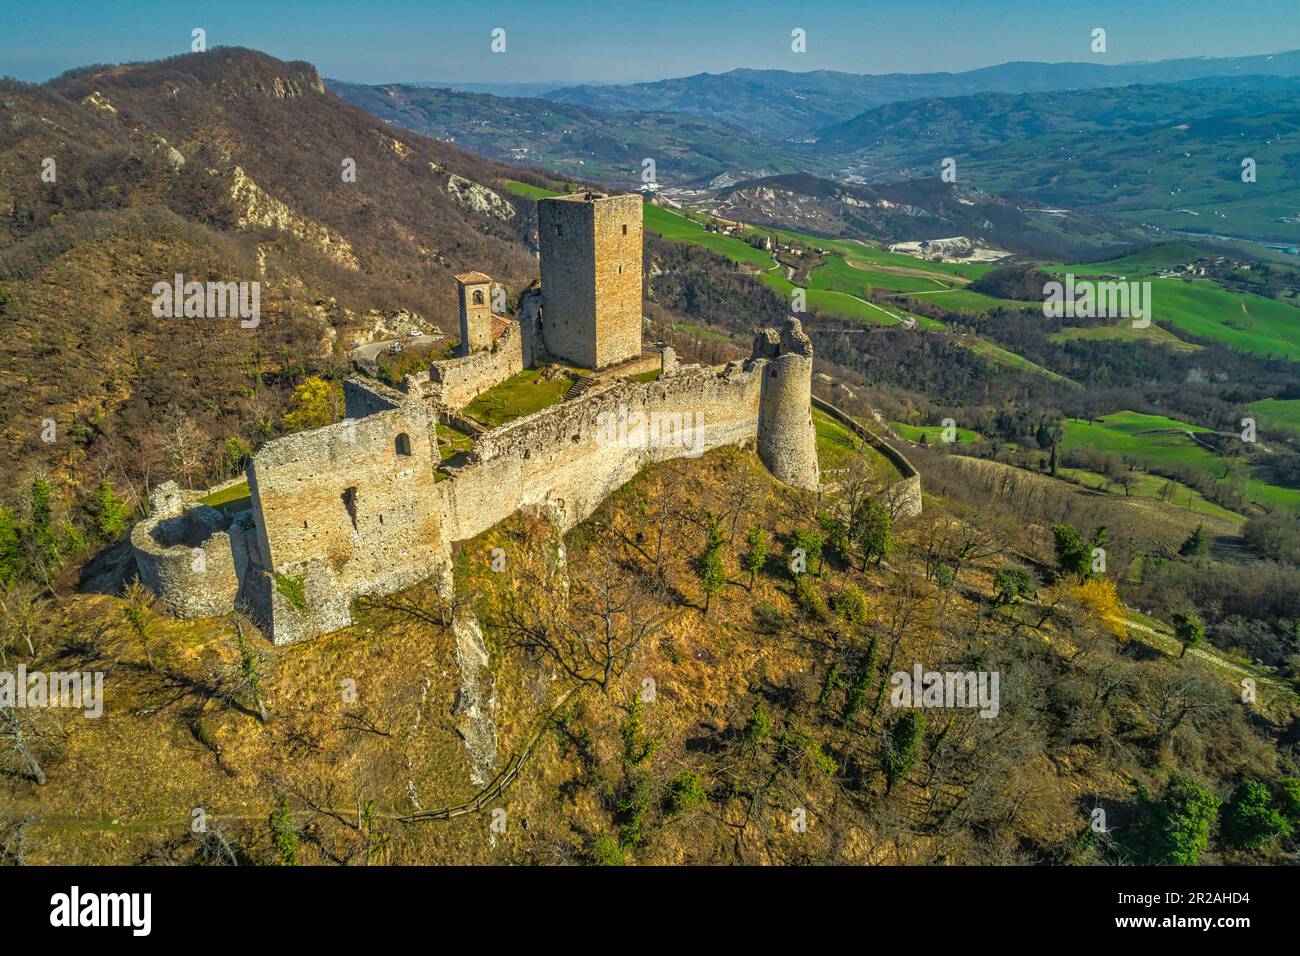 Veduta aerea del castello di Carpinete. È uno dei castelli delle terre matildiche. Carpineti, provincia di Reggio Emilia, Emilia Romagna, Italia, Europa Foto Stock